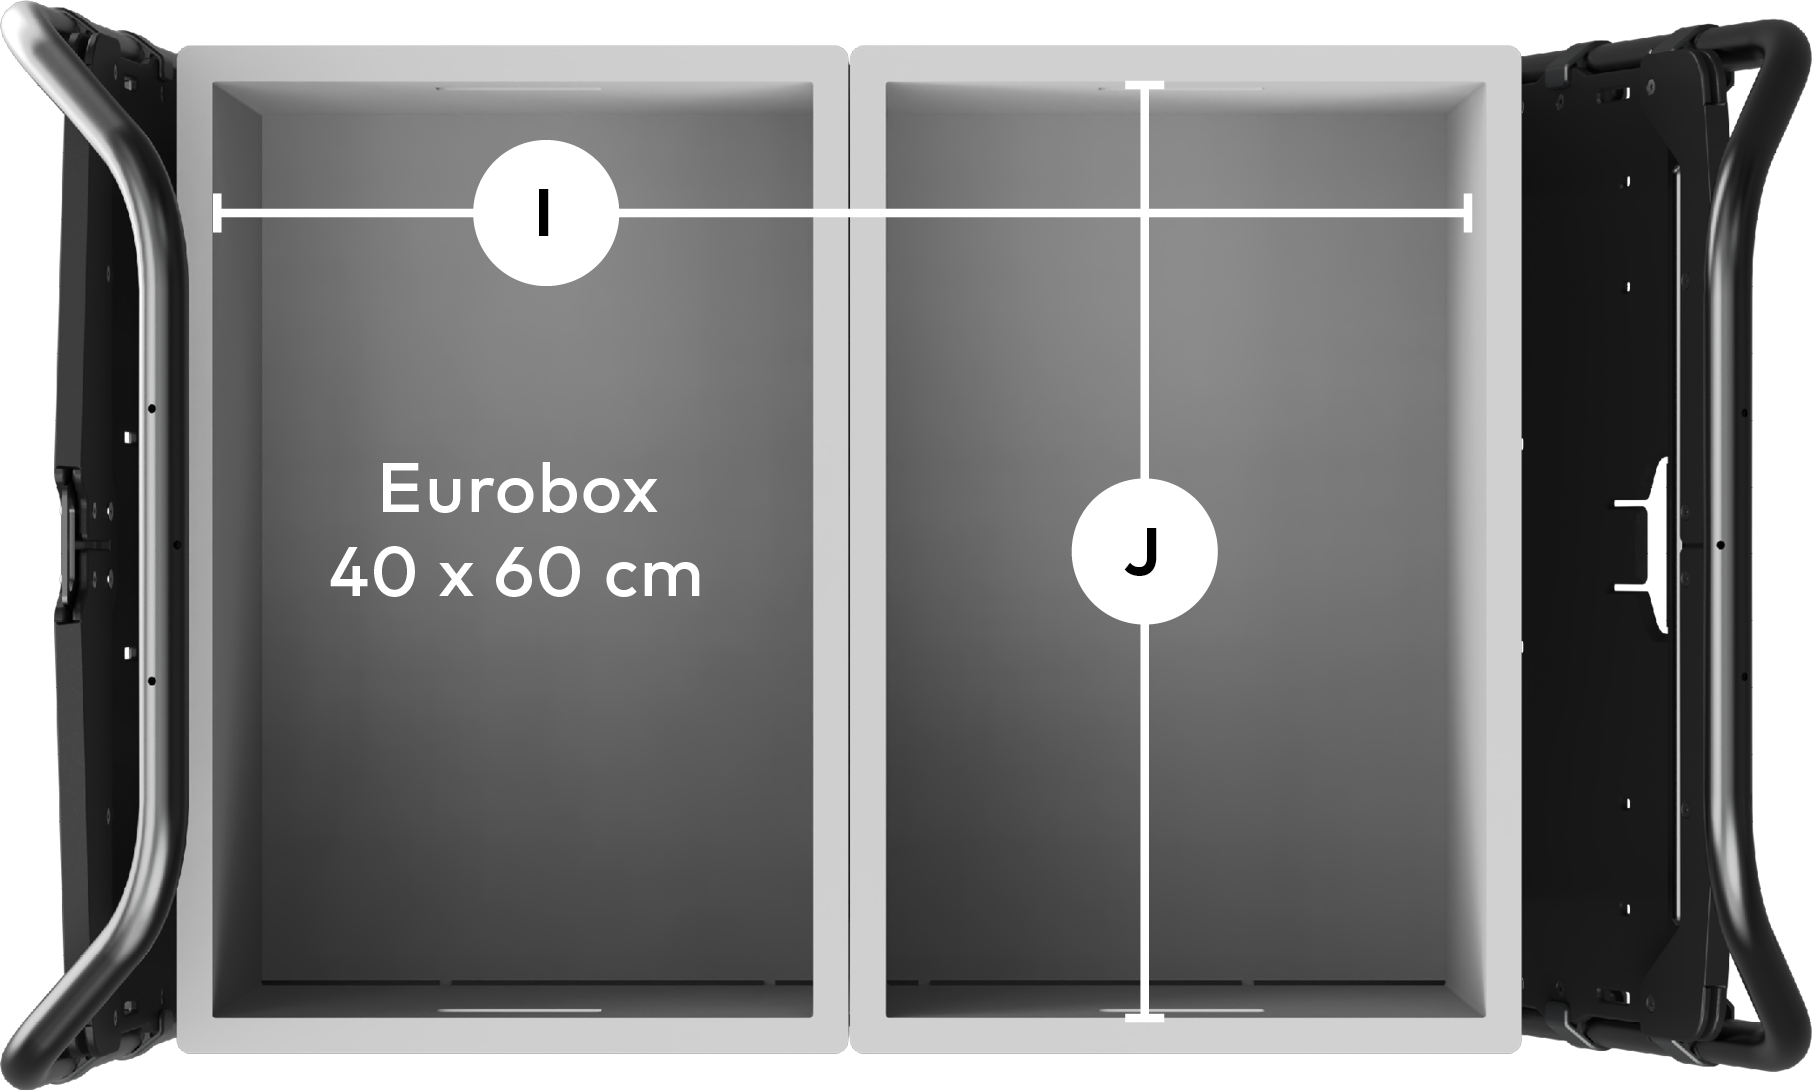 Ansicht von oben auf die Ladefläche.
                            Zwei 40 &times; 60 cm große Euroboxen liegen darauf,
                            darüber sind die Abmessungen des Laderaums eingezeichnet.
                            Breite: 60 cm;
                            Länge: 80 cm